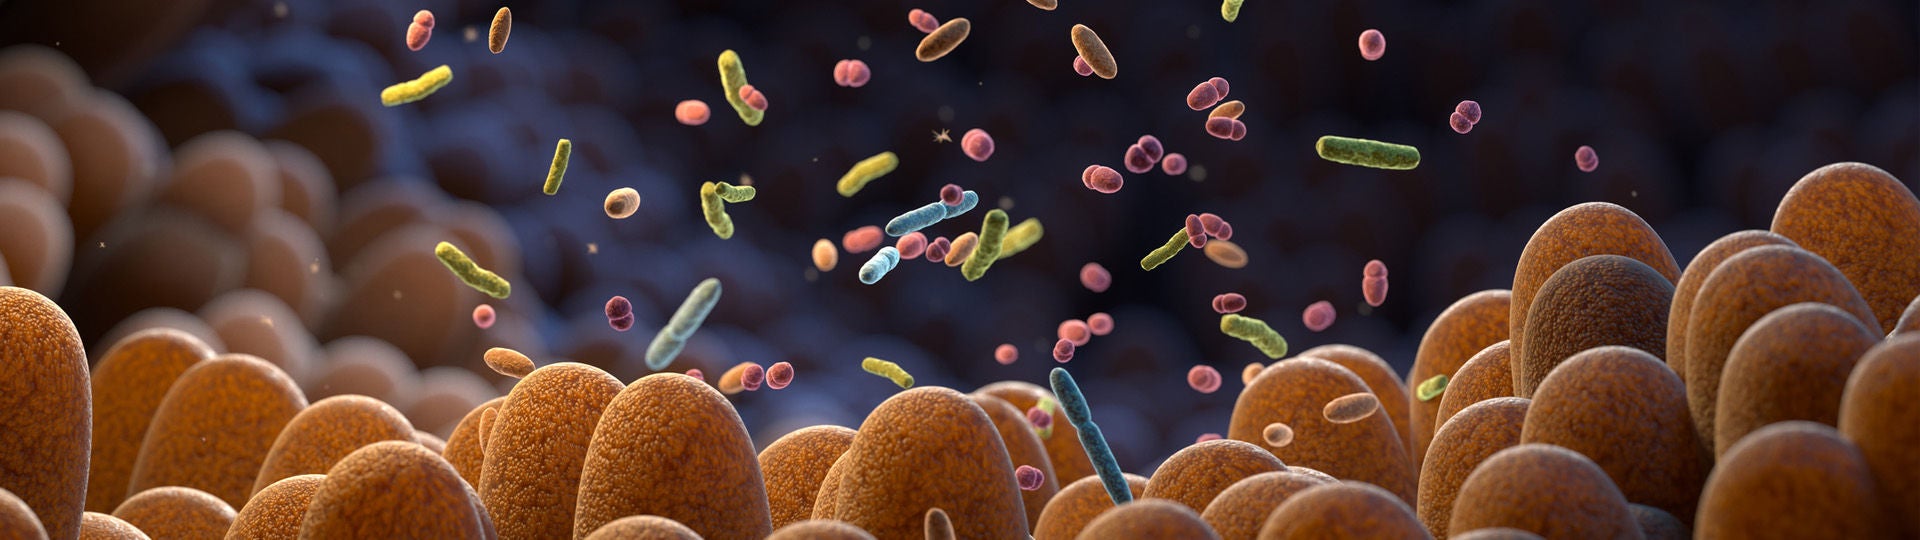 Mehrfach vergrößerte Aufnahme der Darmbakterien, die das Mikrobiom bilden. Bildquelle: iStock / iLexx